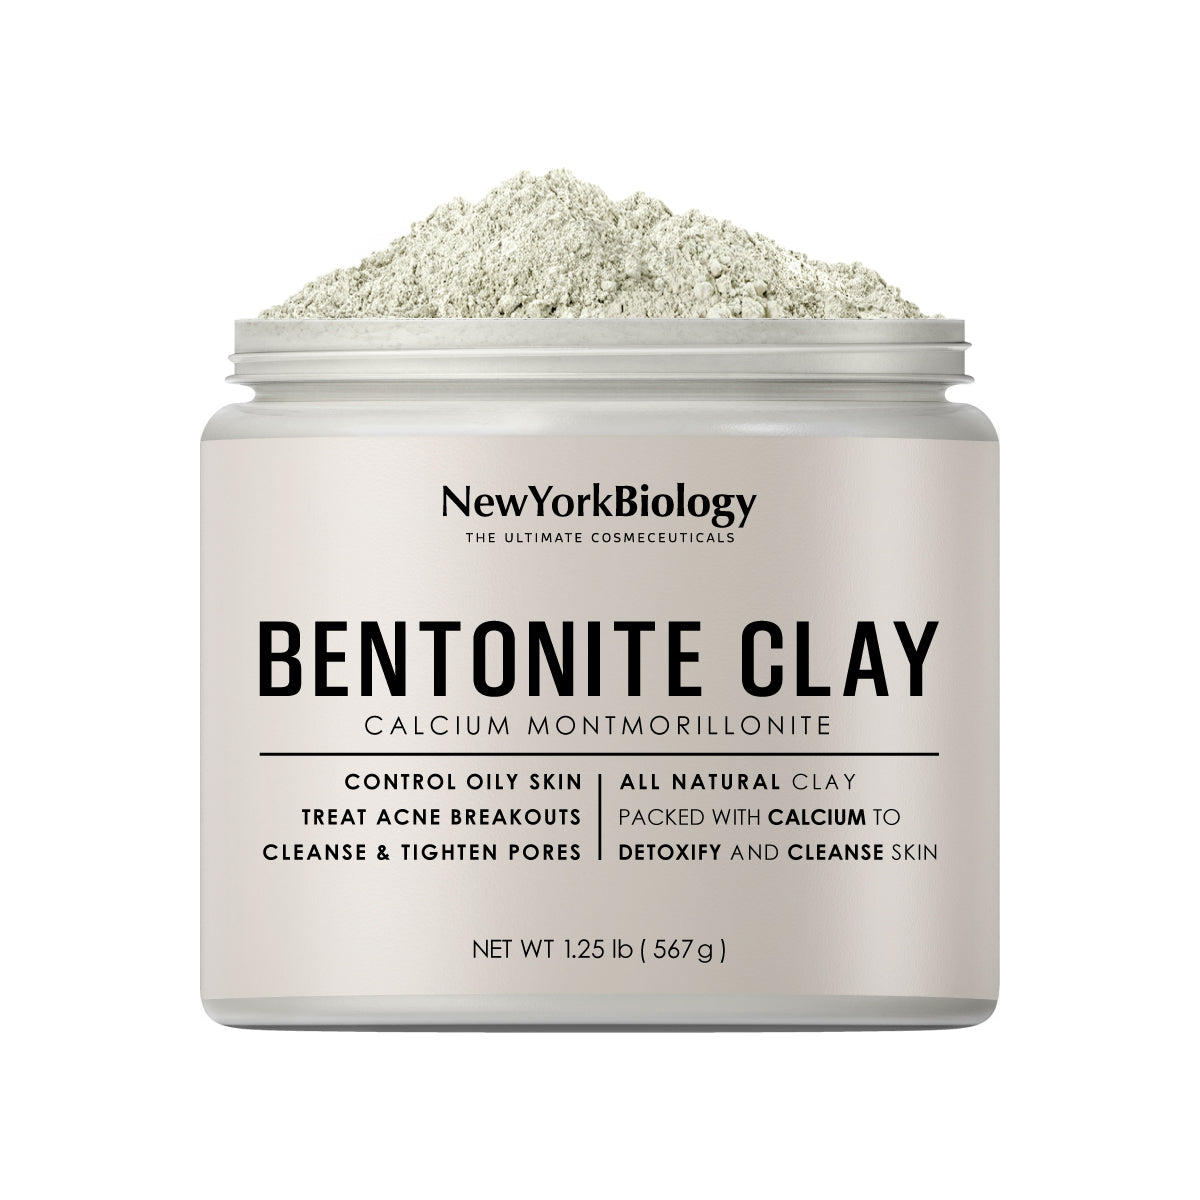 bentonite clay dangers for skin - Arad Branding